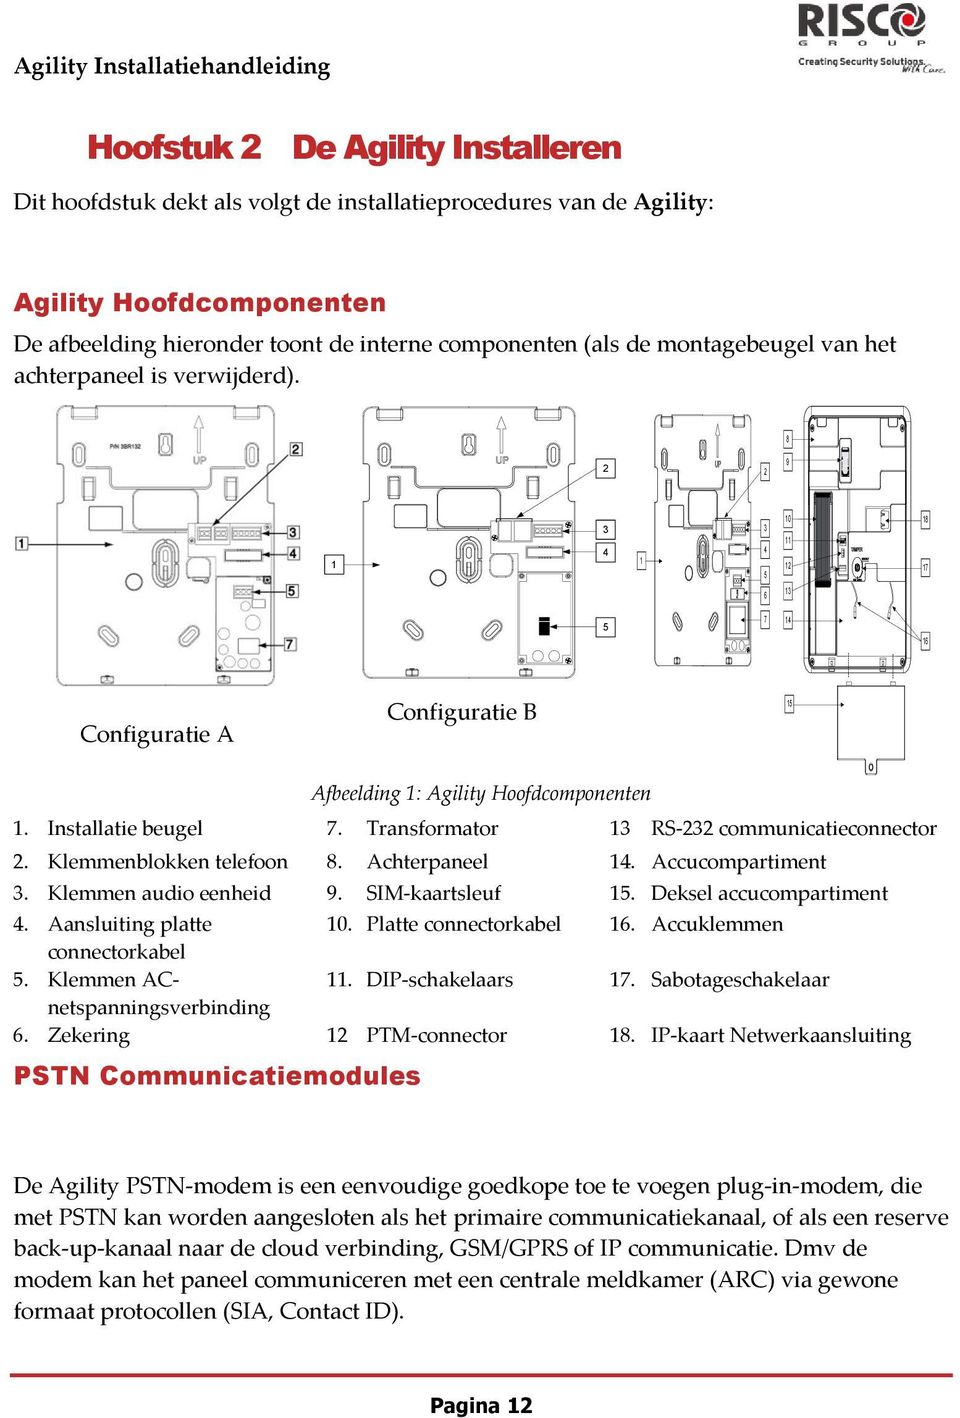 8 2 2 9 1 3 4 1 3 4 5 10 11 12 18 17 6 13 5 7 14 16 Configuratie A Configuratie B 15 Afbeelding 1: Agility Hoofdcomponenten 1. Installatie beugel 7. Transformator 13 RS-232 communicatieconnector 2.